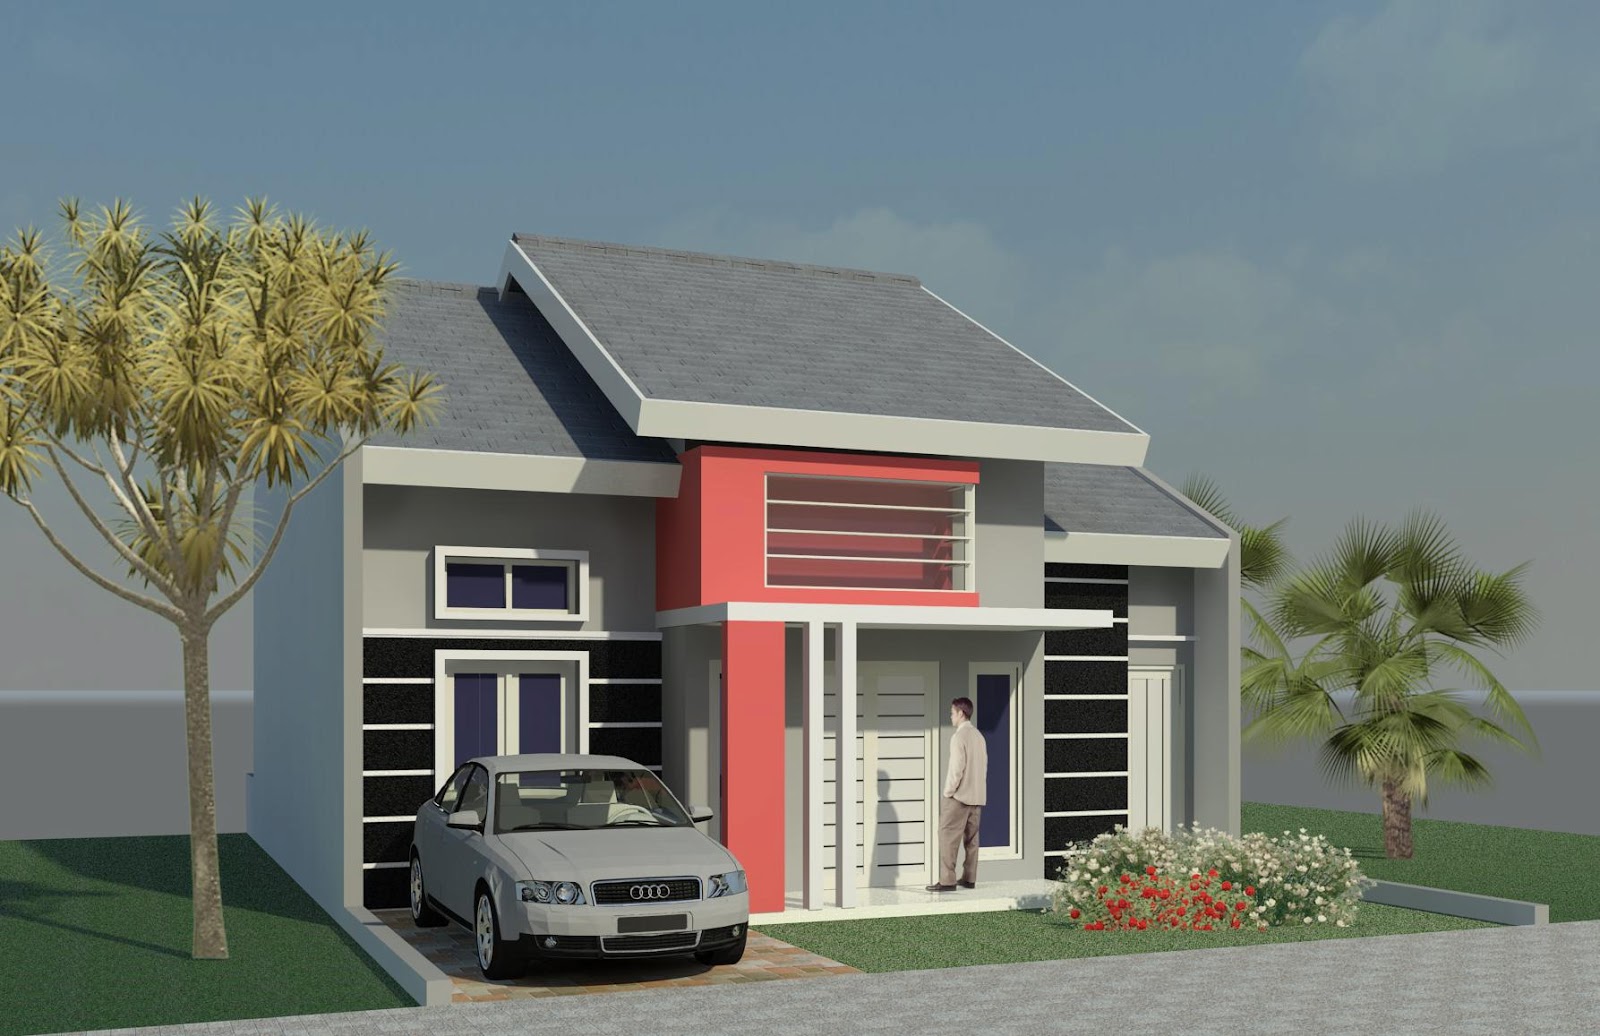  Desain  Rumah  Minimalis  1 Lantai  Sederhana  Terbaru 2019